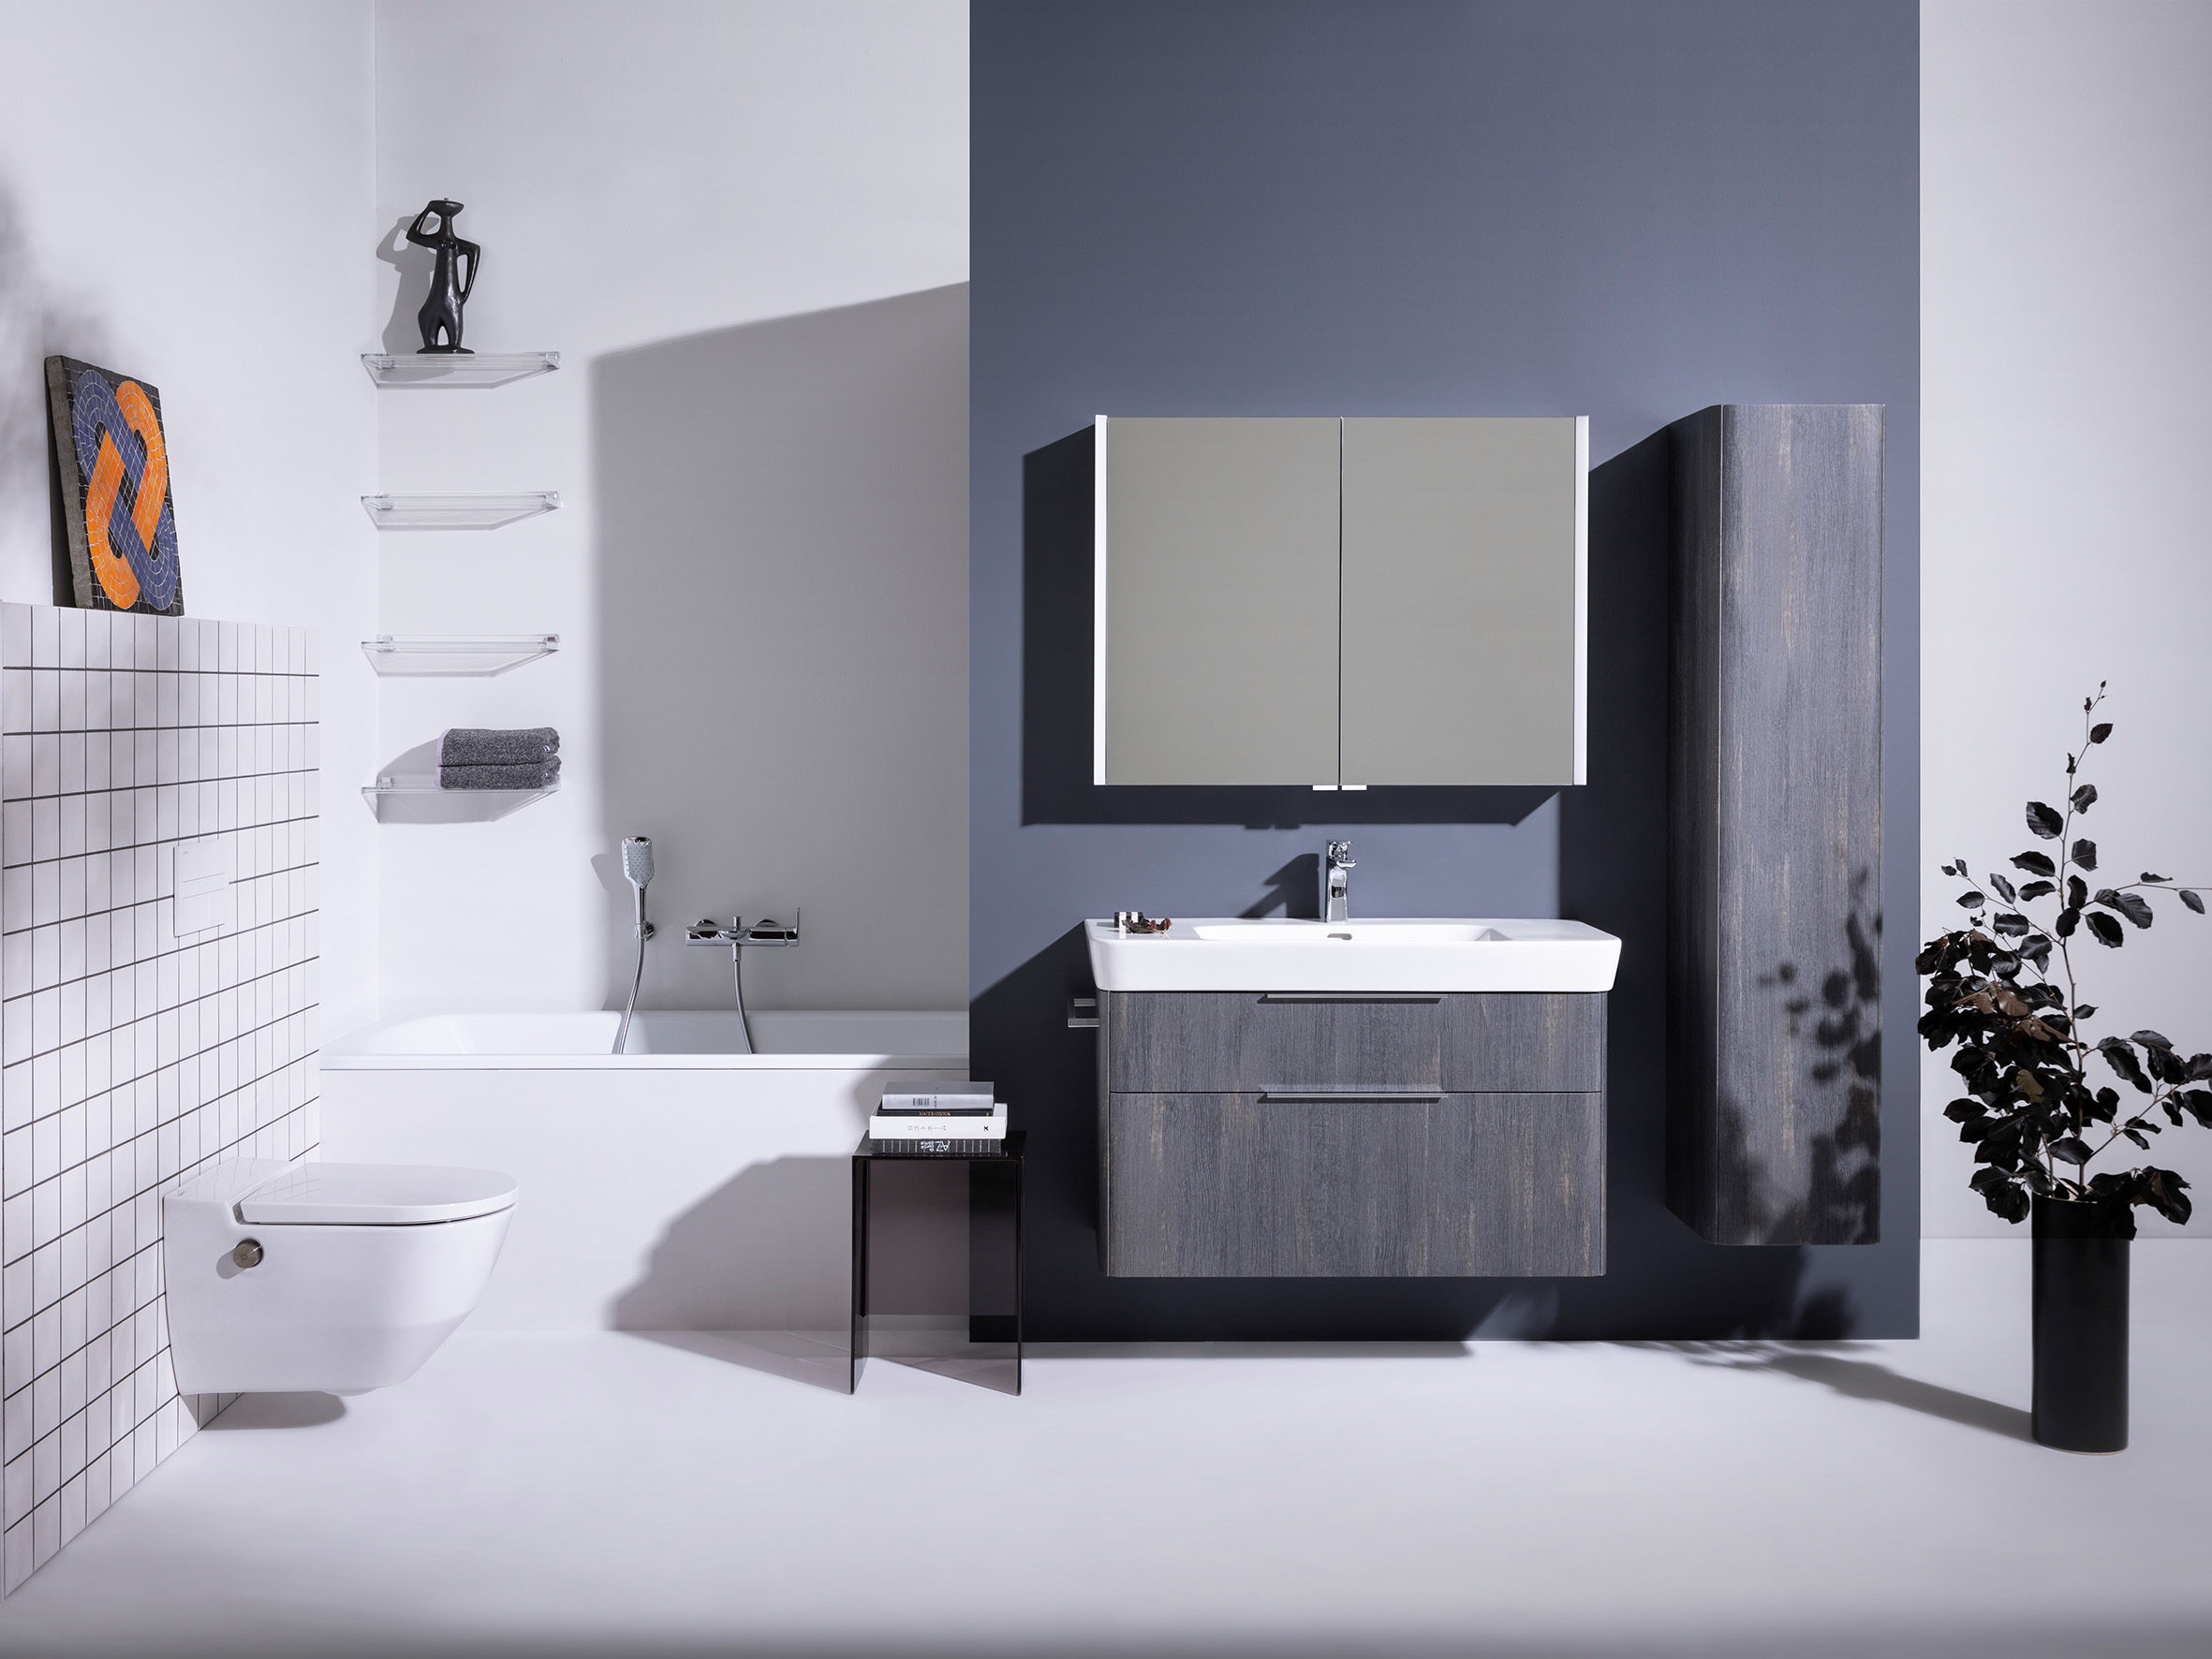 Badezimmer mit grauen Farbtönen, Waschtisch mit Holzmöbel, Einbau-Badewanne, Wand-WC an gefliester Wand, Dekoration